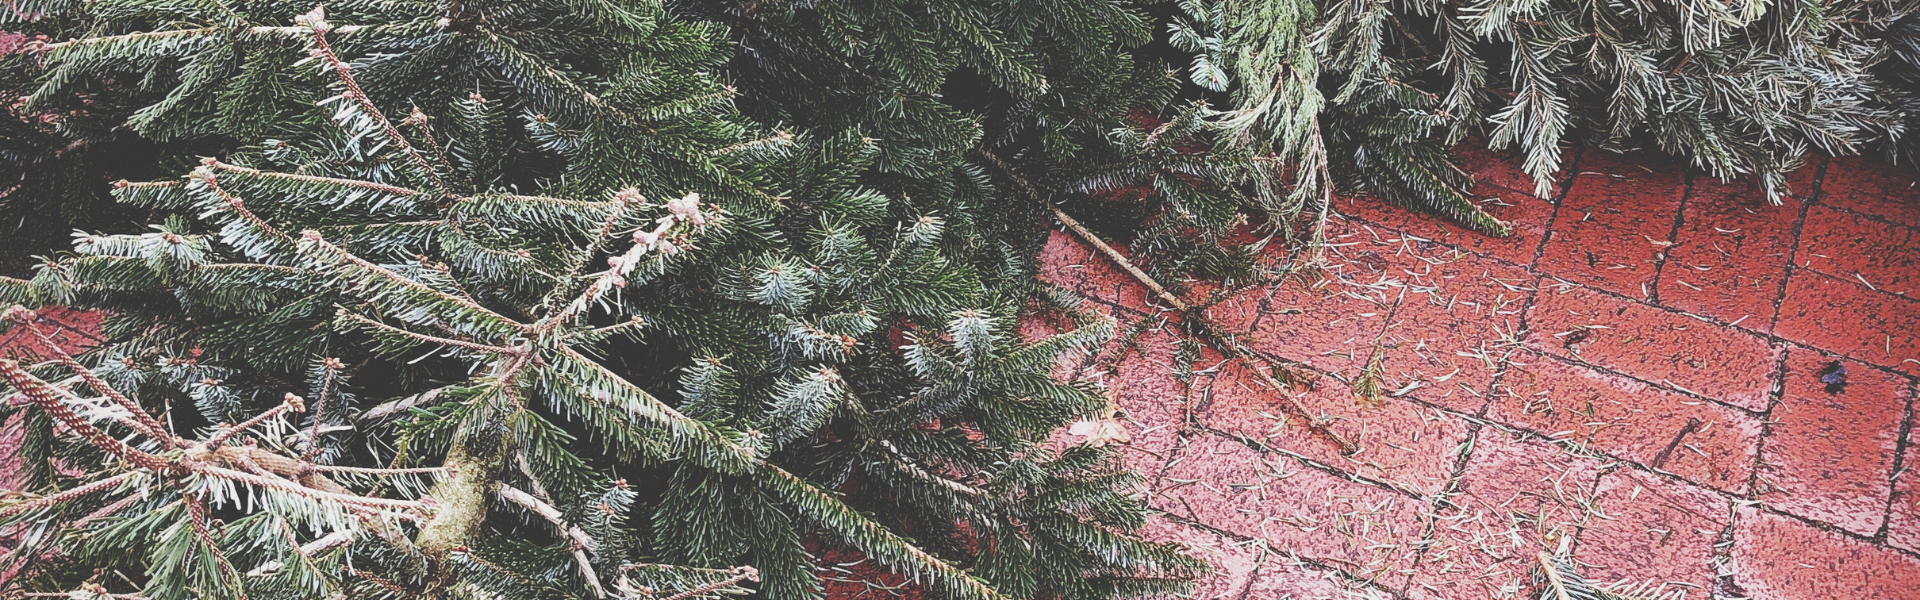 Header Bild EAD sammelt ausgediente Weihnachtsbäume ein: 40 Sammelstellen im gesamten Stadtgebiet